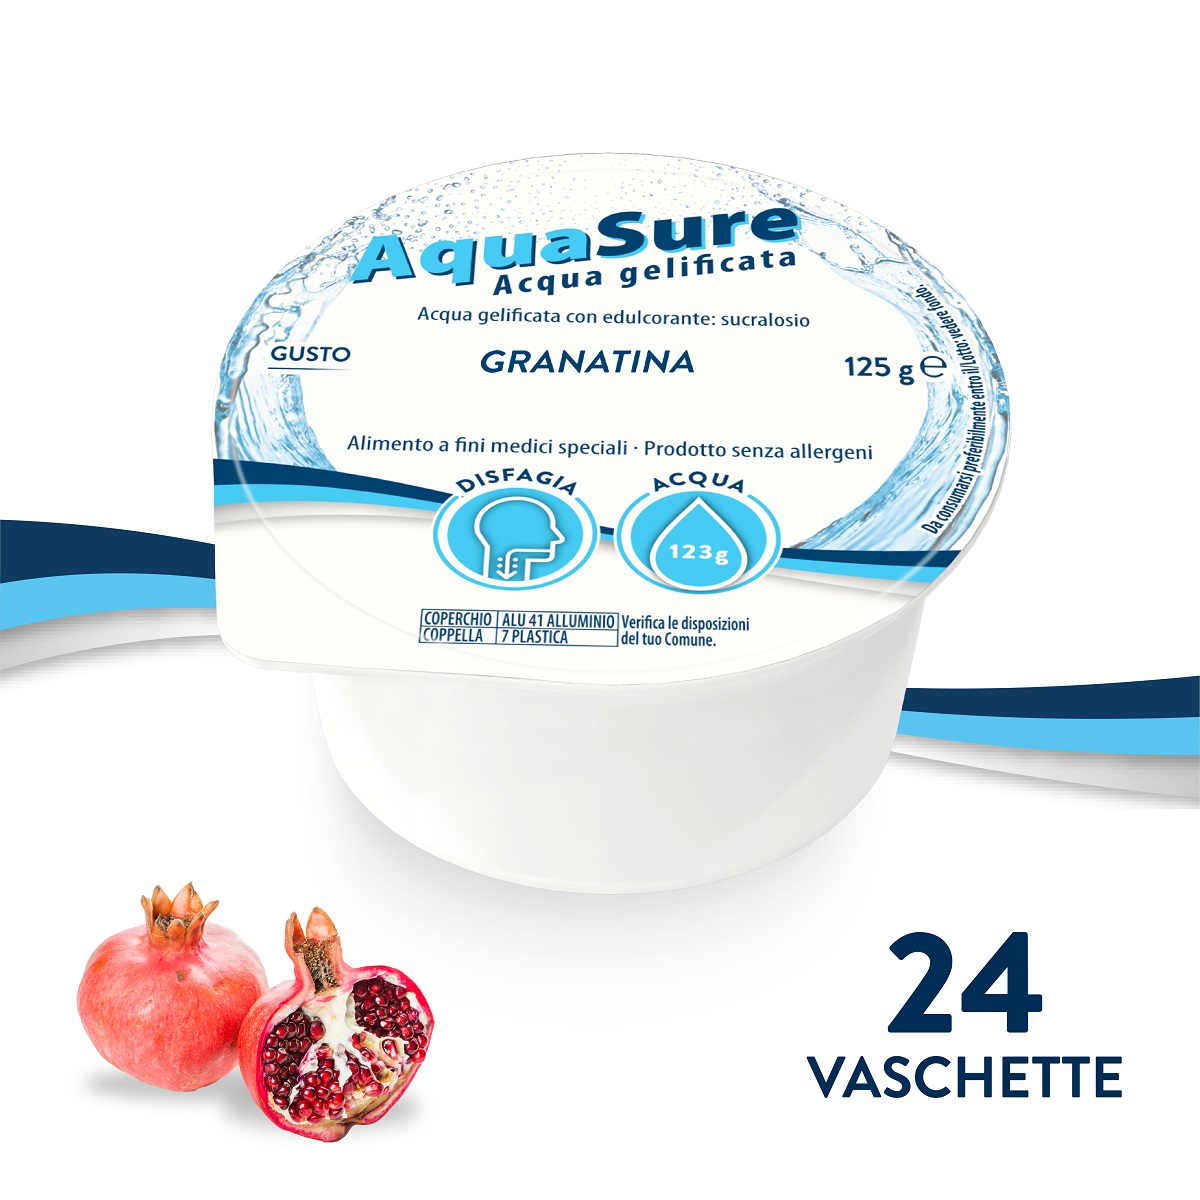 Aquasure Acqua Gelificata Gusto Granatina 24X125g